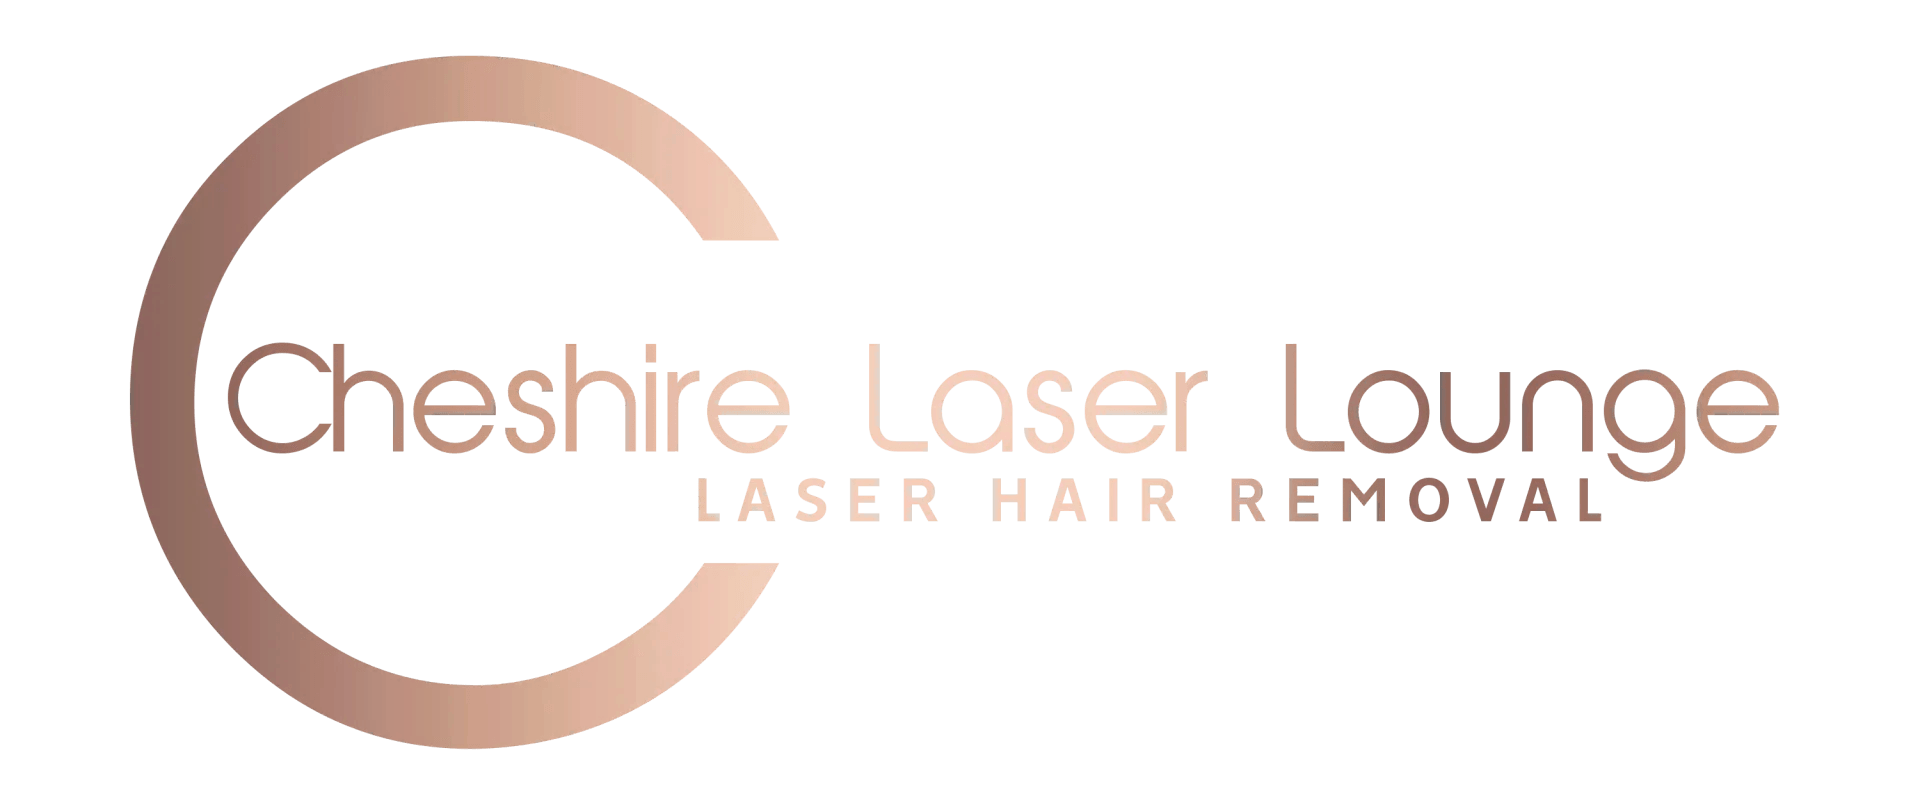 Cheshire Laser Lounge Logo